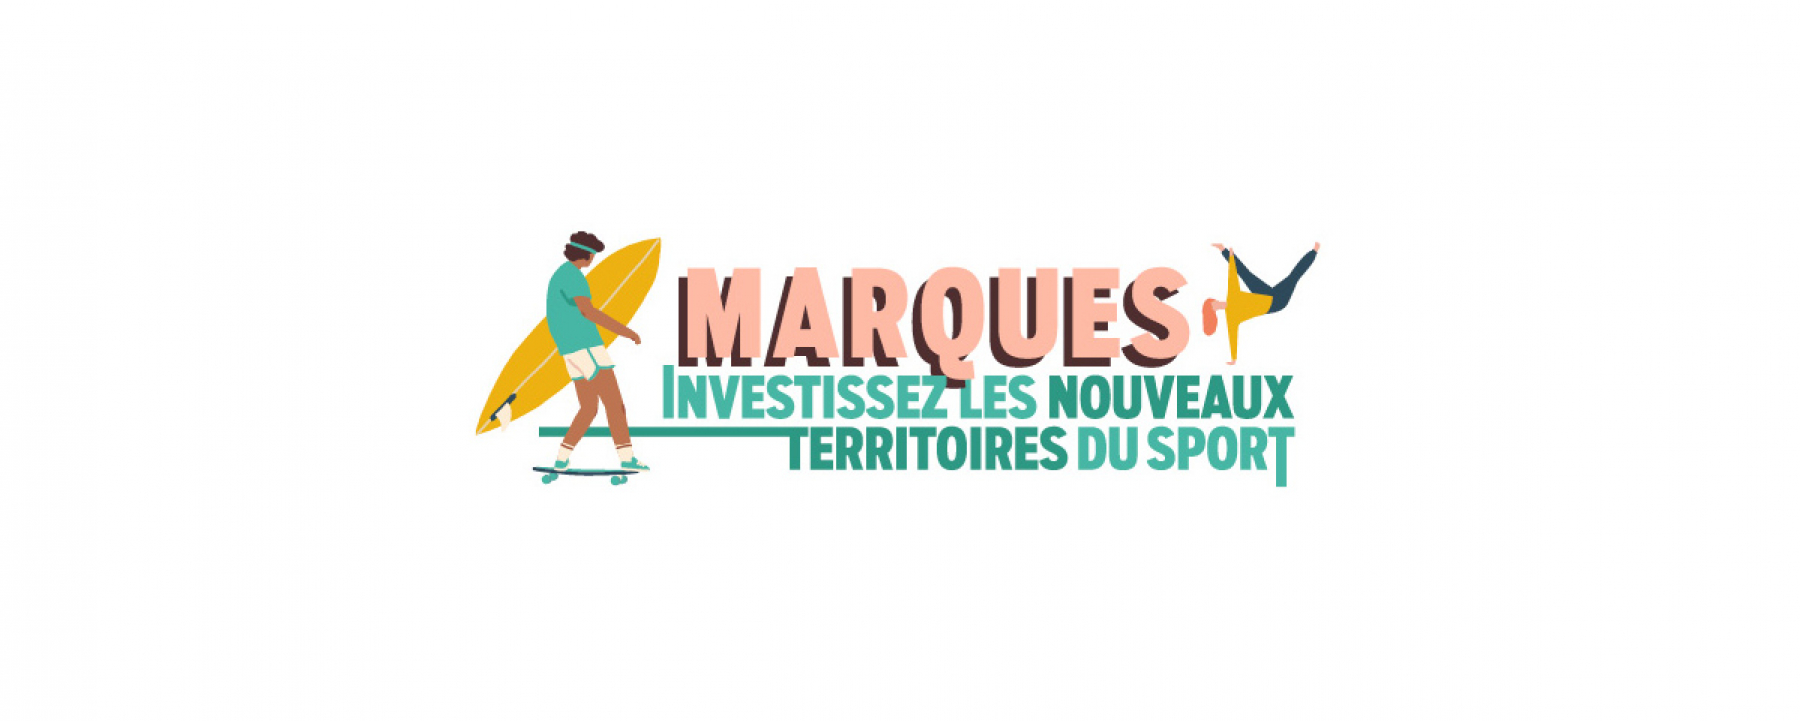 Bannière Marques : investissez les nouveaux territoires du sport 